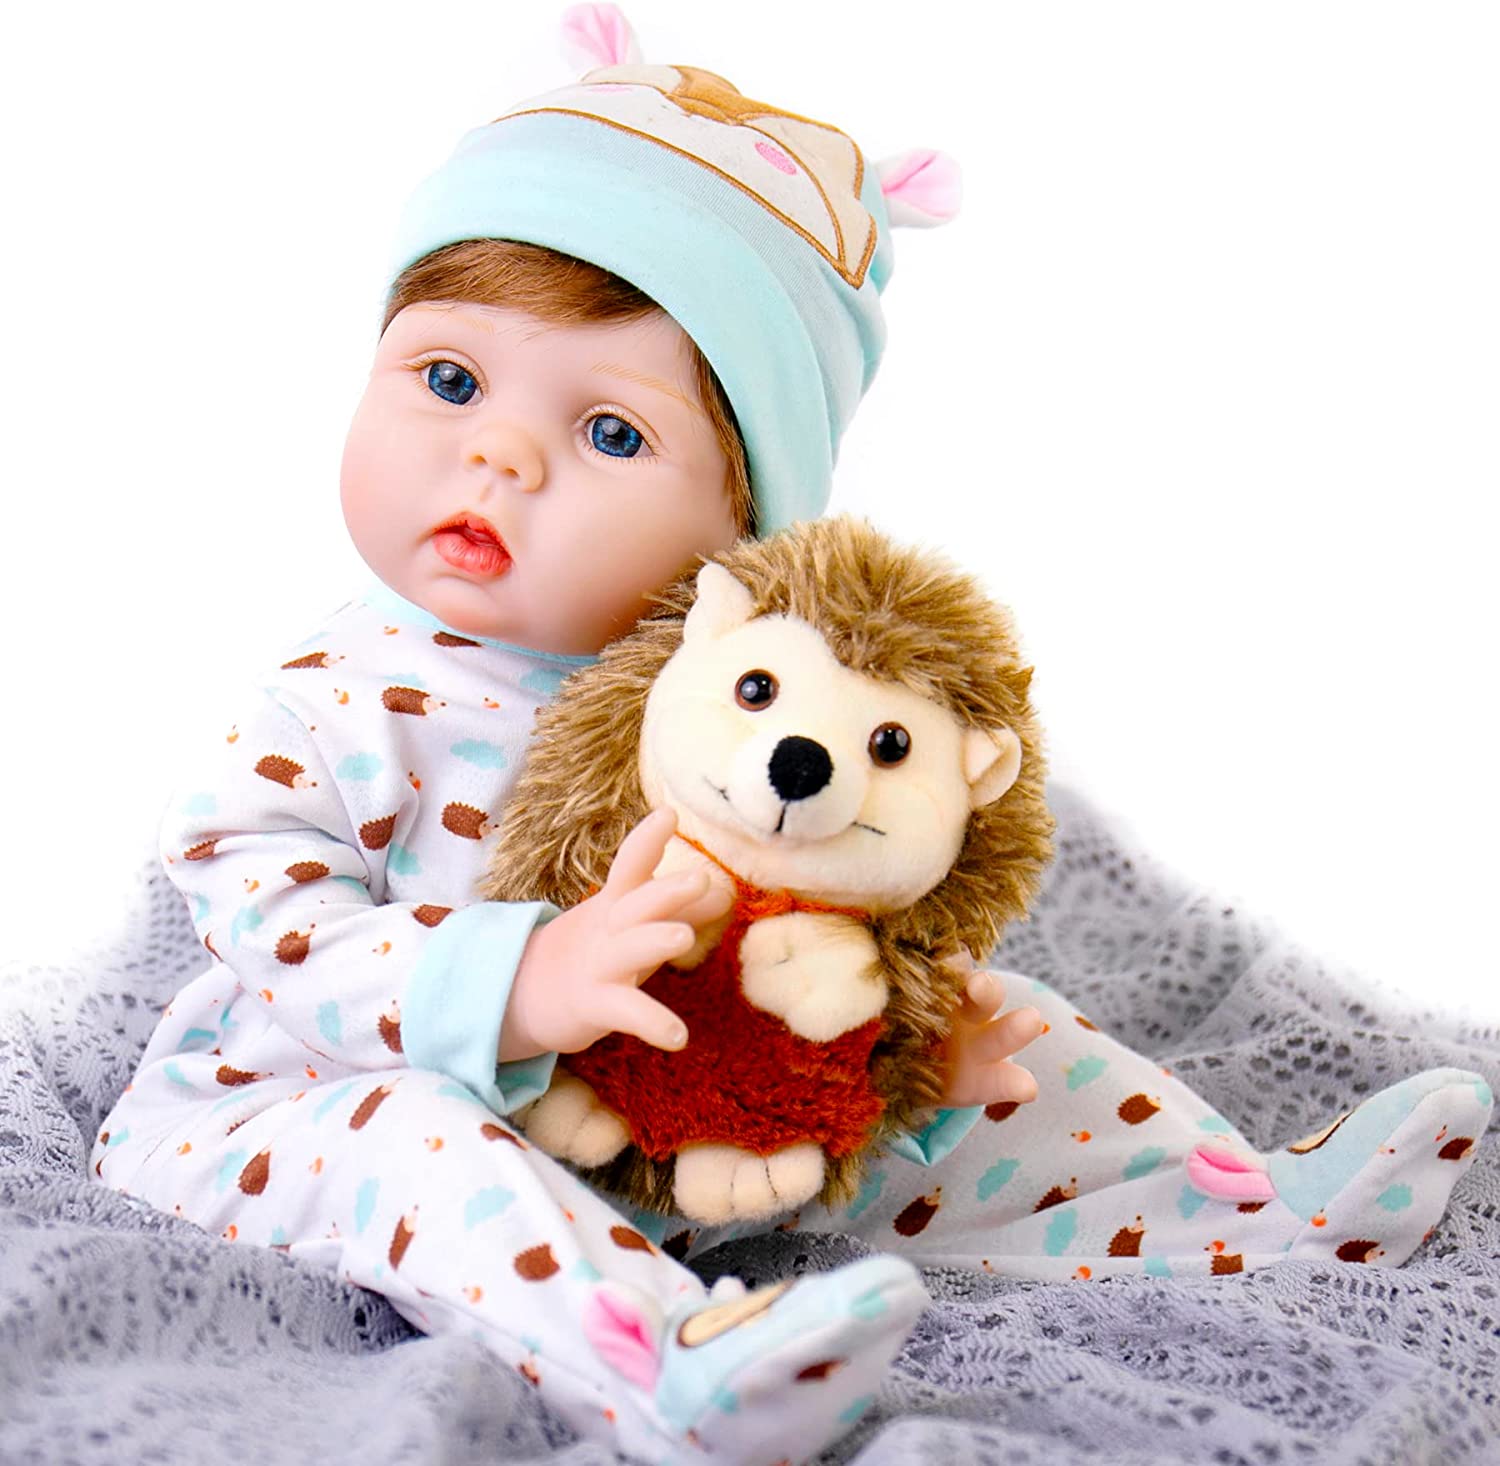 Bebé Realista con juguete erizo y accesorios